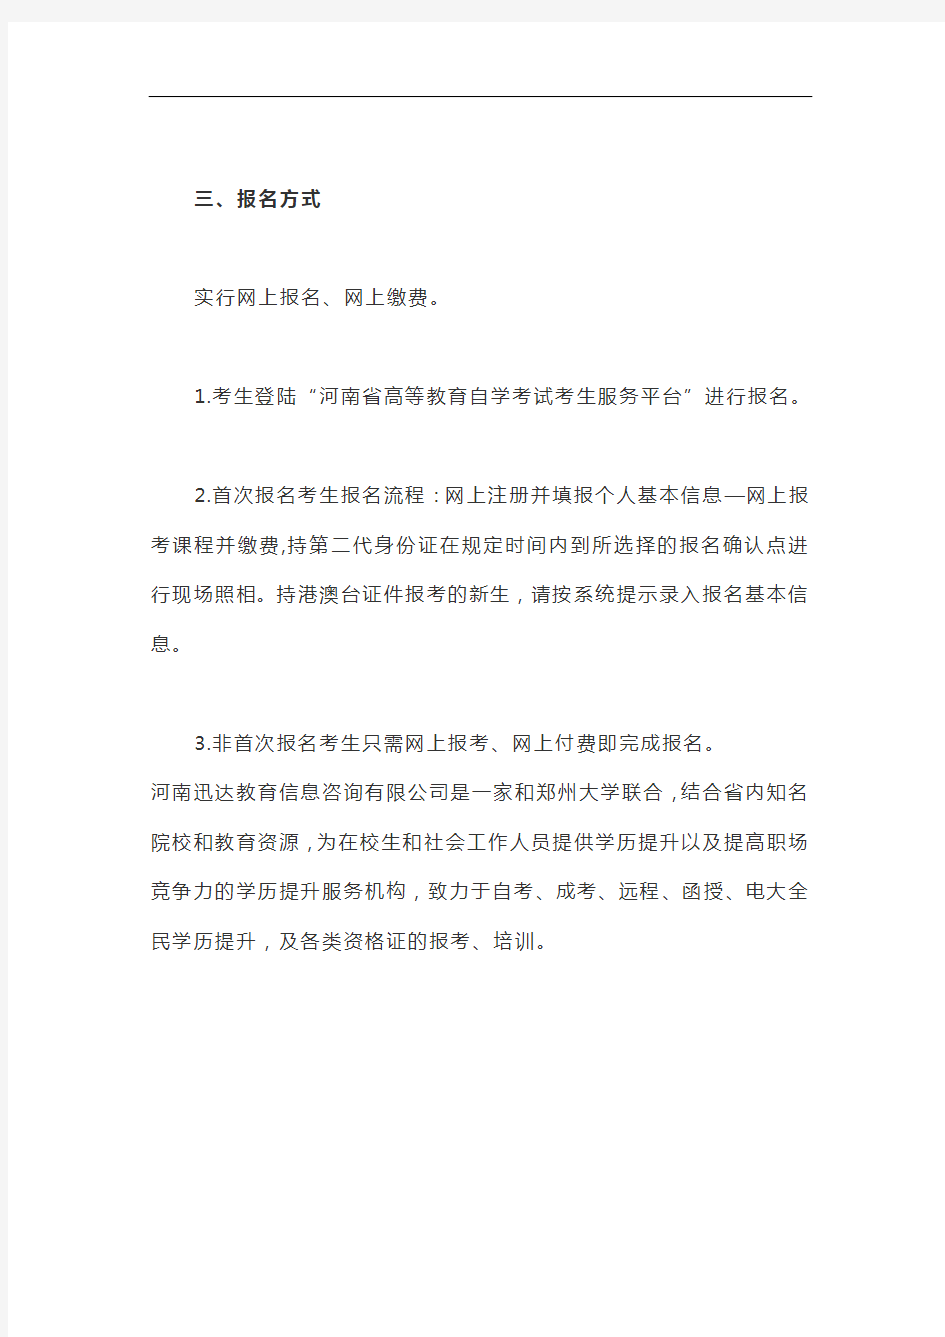 河南省2020年下半年自学考试报名须知